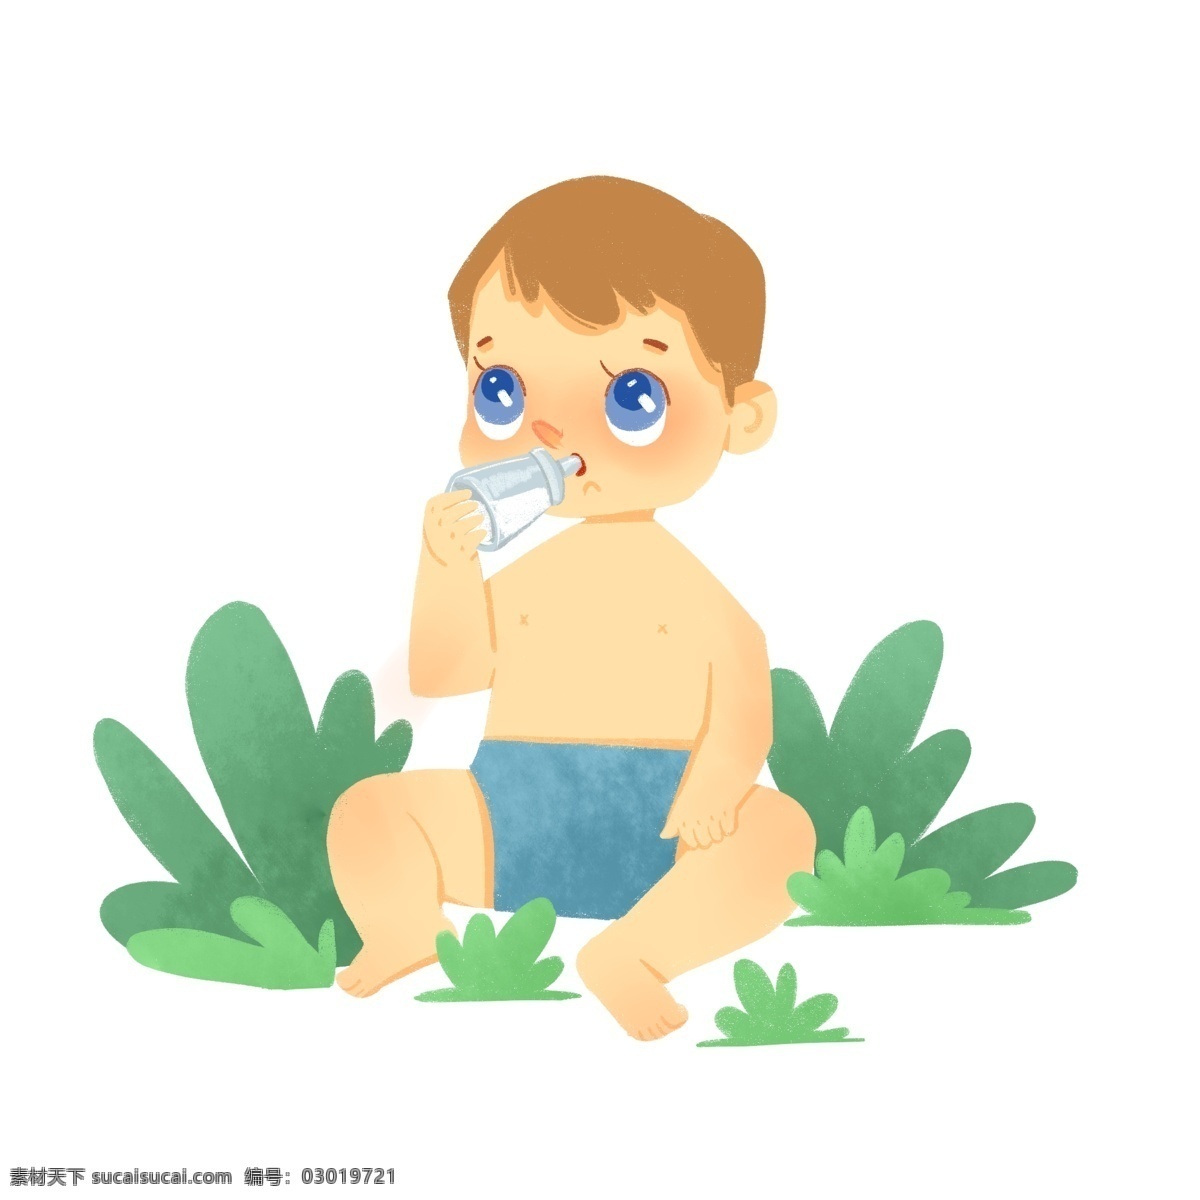 可爱 小 婴儿 喝 奶瓶 小婴儿 宝宝 宝贝 卡通 人物 喝奶 牛奶 奶粉 吃饭 小男孩 小朋友 草地 植物 小裤头 开心